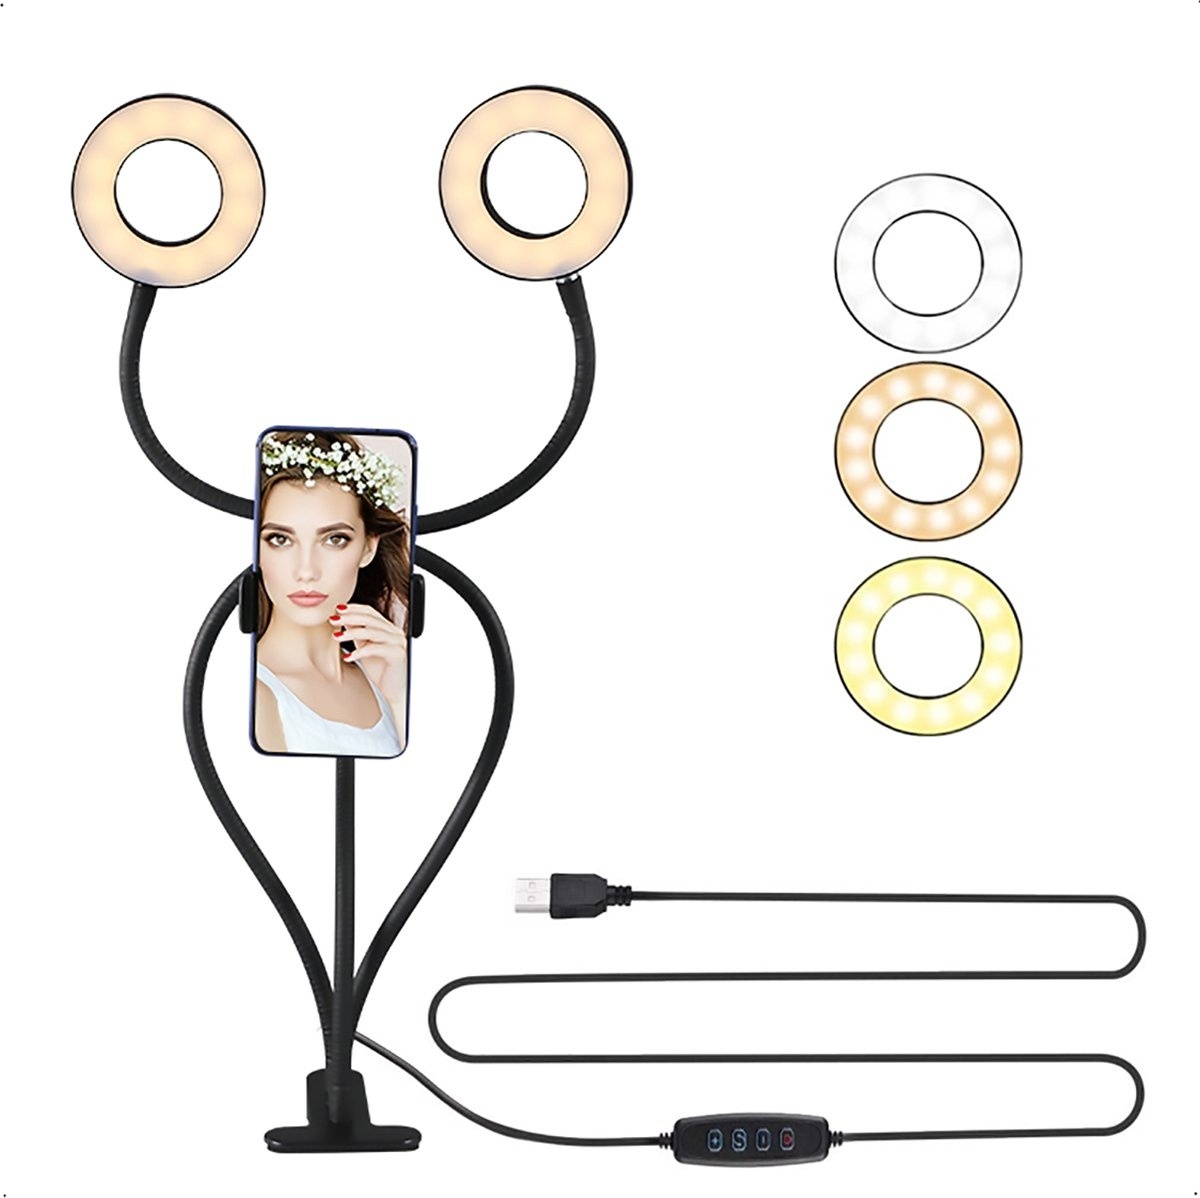 urgoods led-ringlampe mit stativ smartphone - doppel-ringlampe - usb - schreibtischlampe led dimmbar - mit tischklemme - ringlicht - 3 lichtstufen